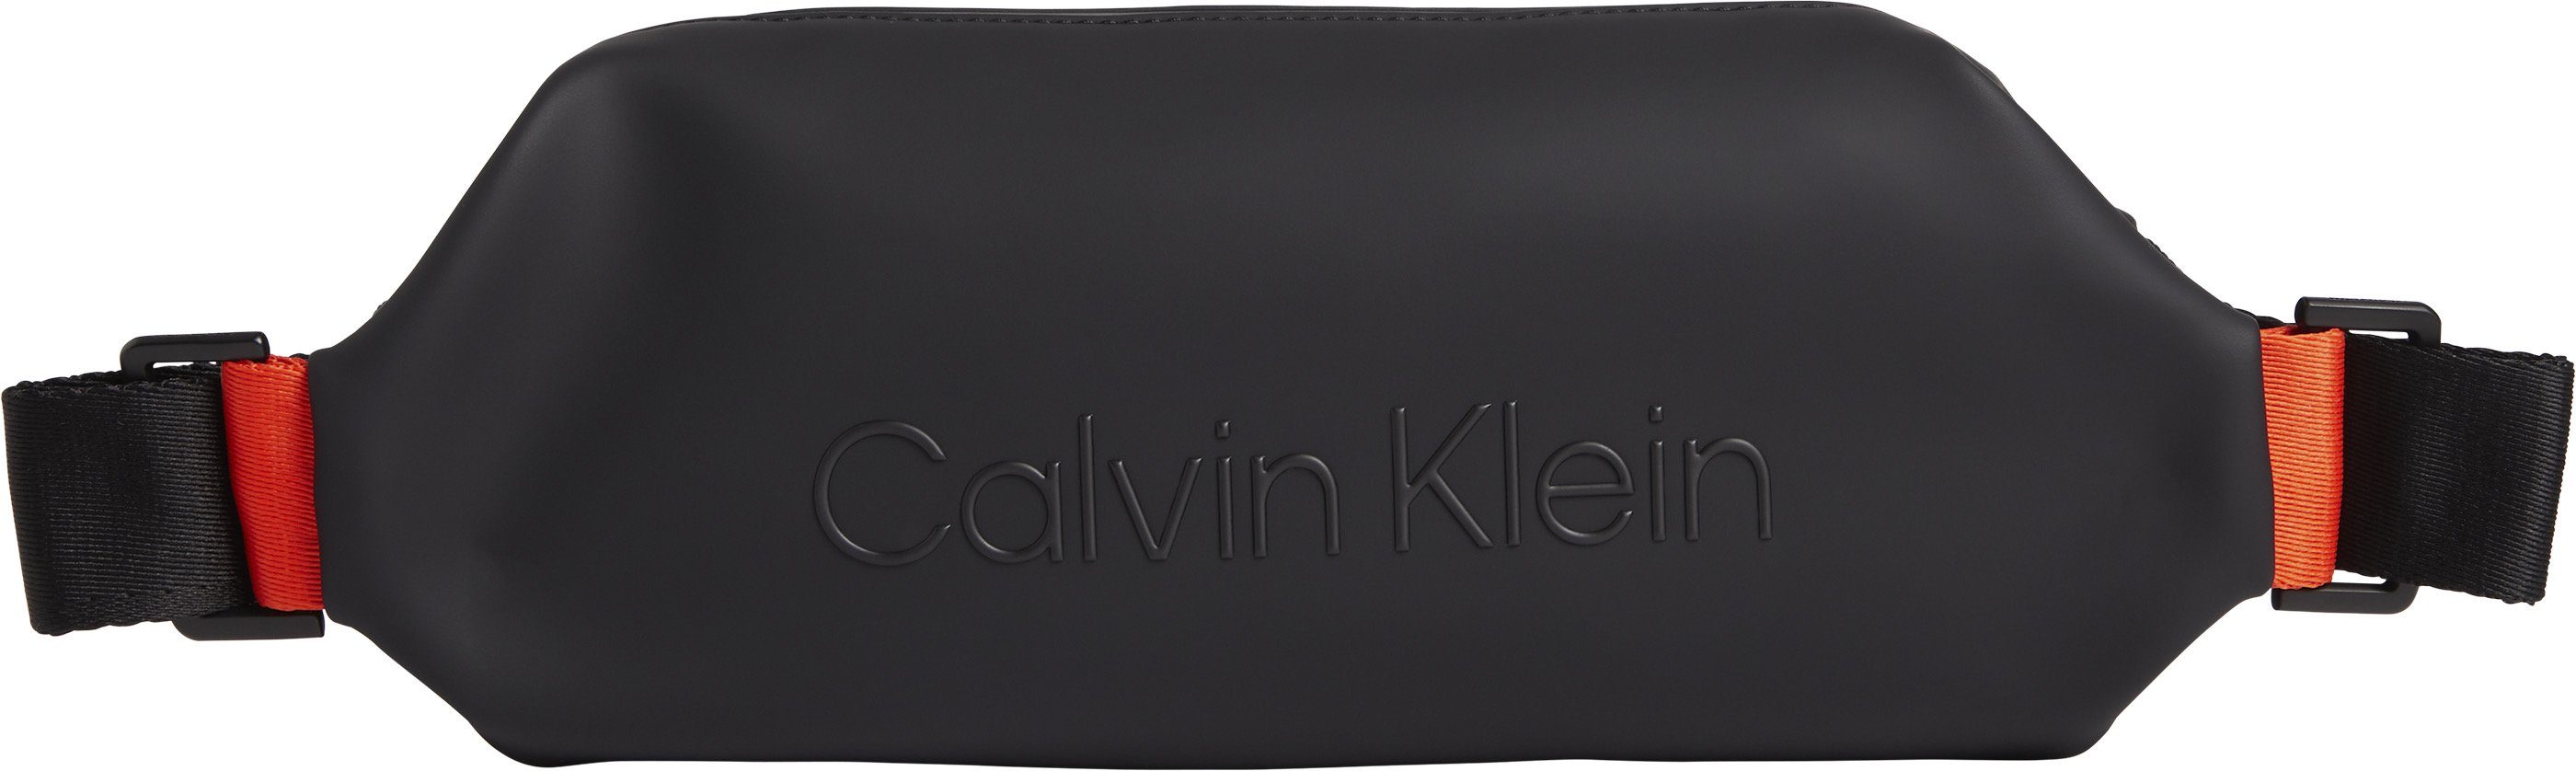 Calvin Klein Bauchtasche »RUBBERIZED WAISTBAG«, mit schöner Logo Prägung  online kaufen | OTTO